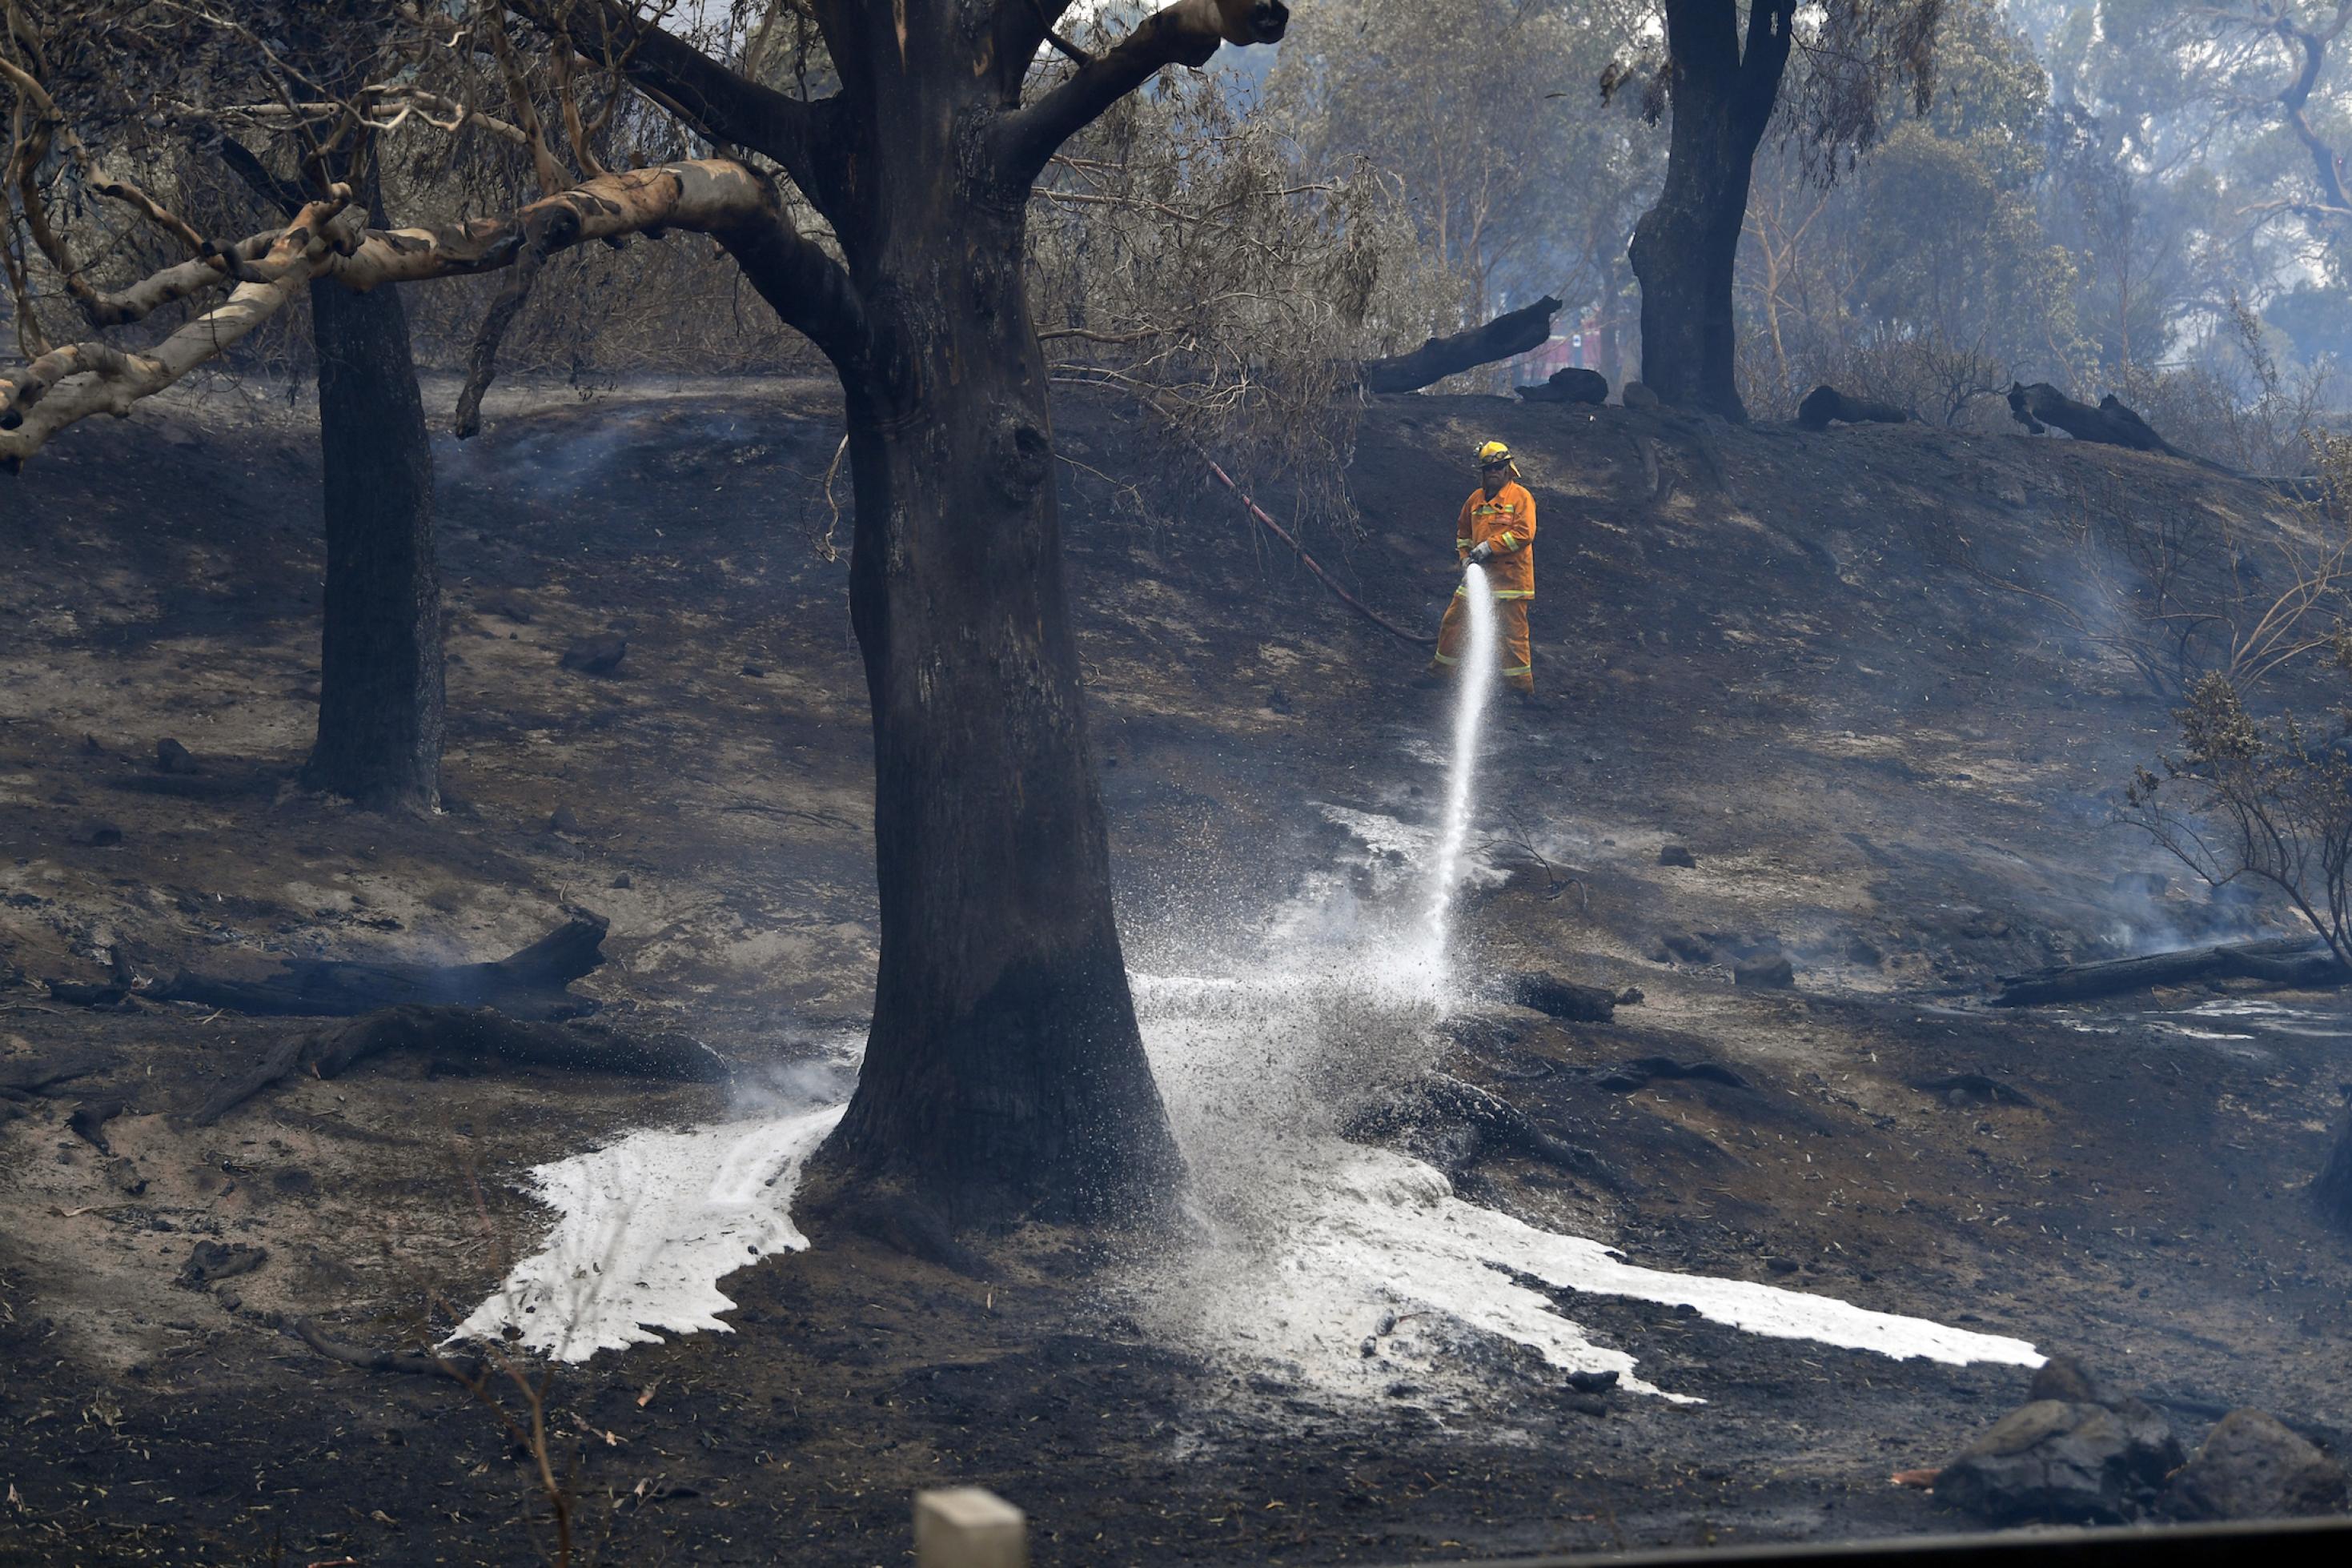 Das Bild zeigt einen hellorgane gekleideten Feuerwehrmann in einer verkohlten Waldlandschaft. Er hat einen Löschschlauch in der Hand und spritzt Wasser und eventuell brandverzögernde Chemikalien in die Landschaft.